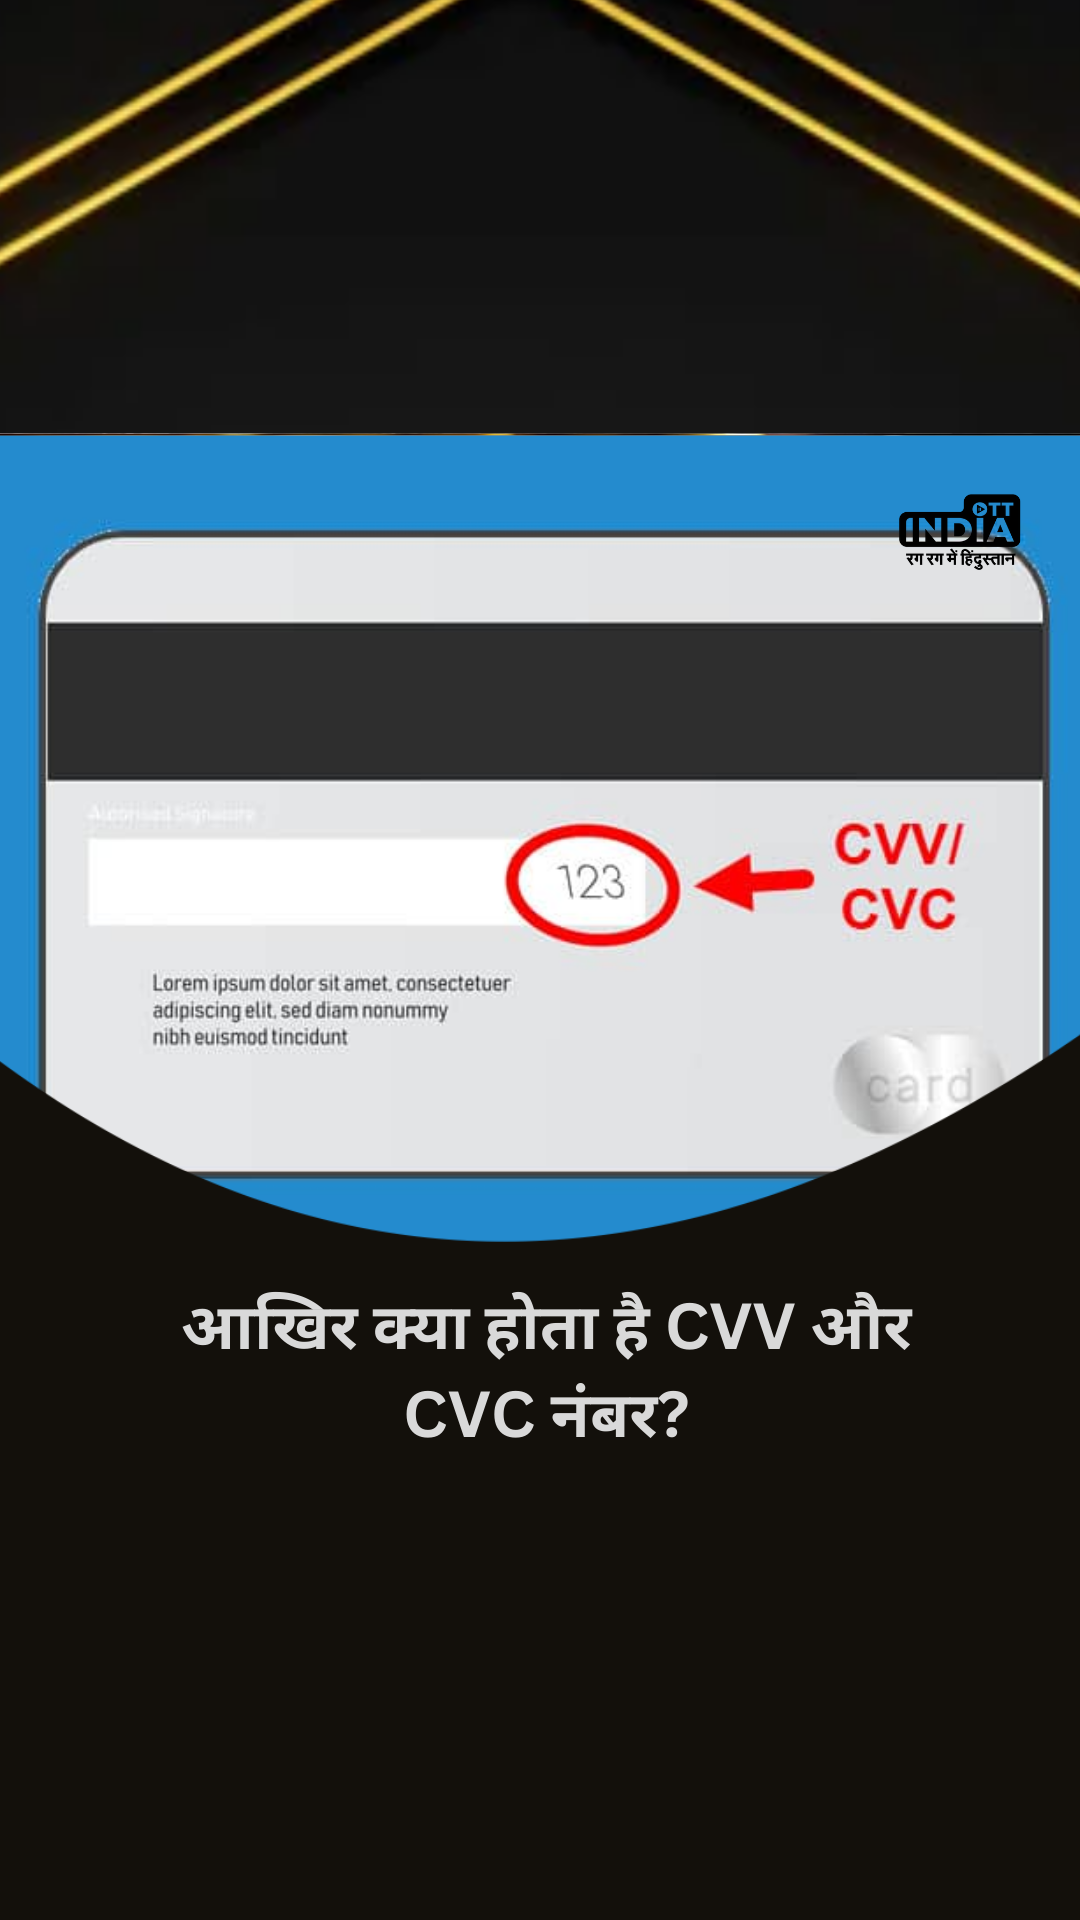 आखिर क्या होता है CVV और CVC नंबर? और बैंक इसे छुपाकर रखने को क्यों कहता है ?